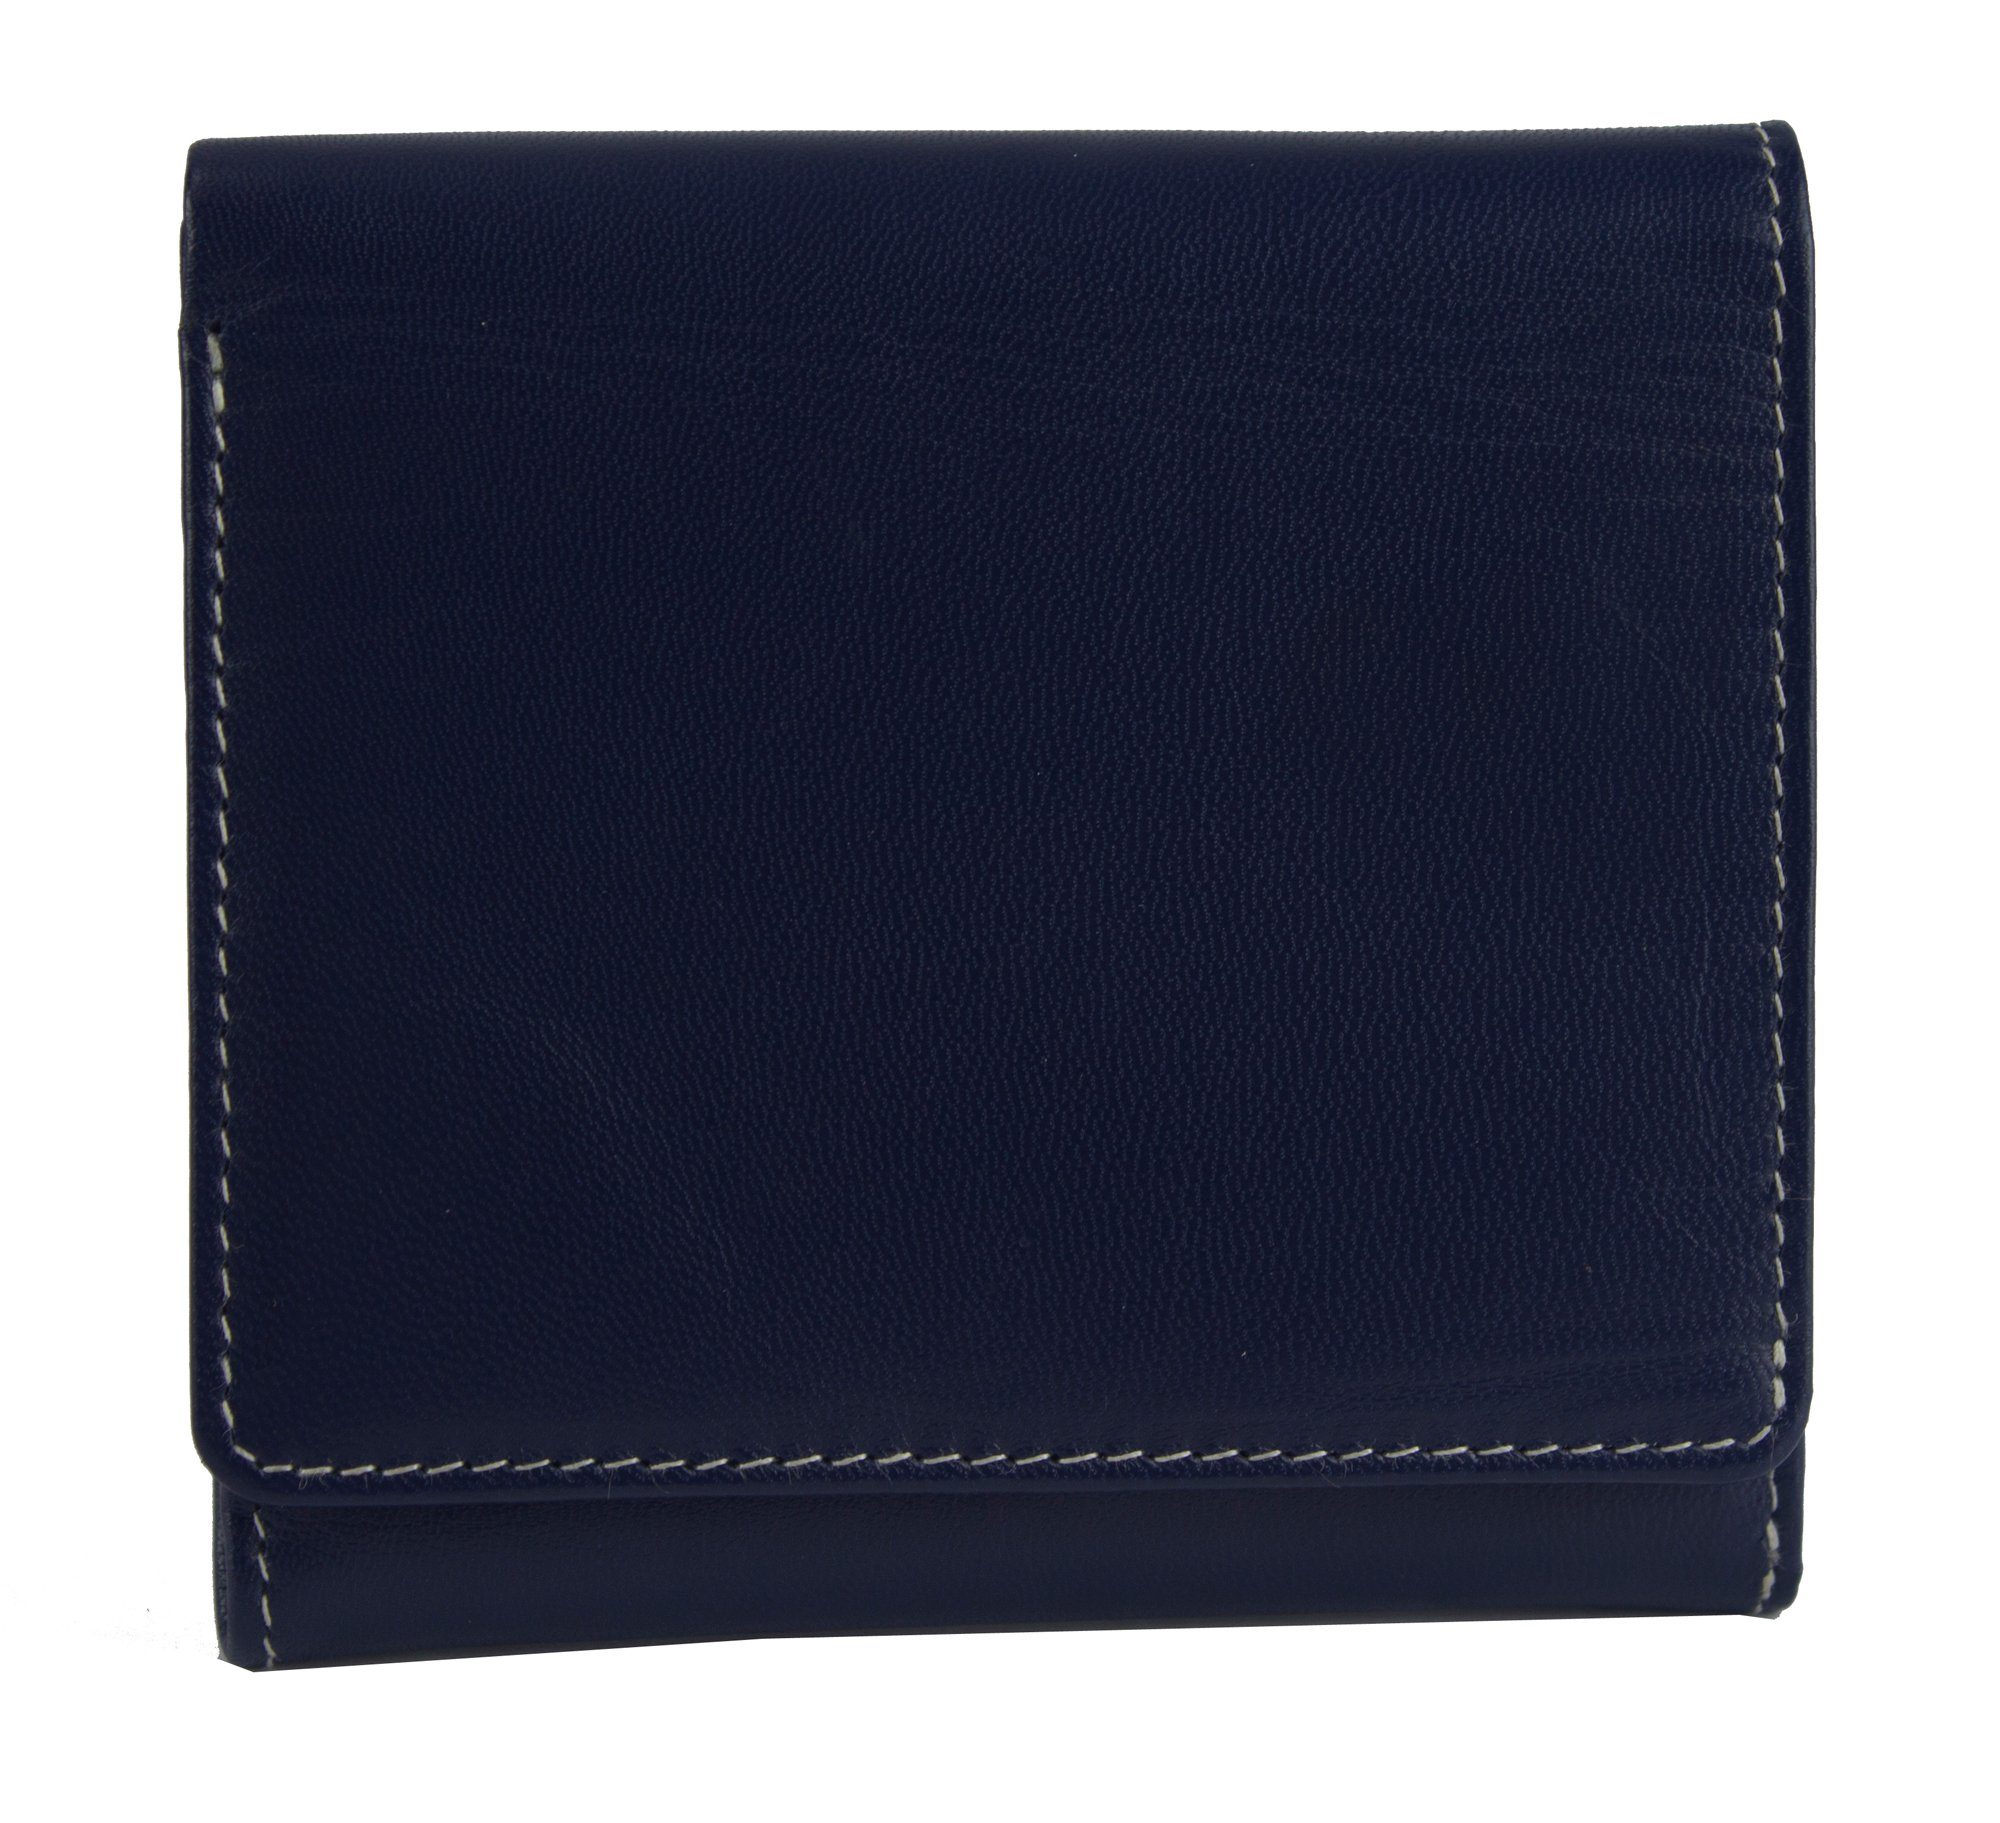 Sunsa Geldbörse echt Leder Geldbeutel Portemonnaie Brieftasche klein Damen, echt Leder, aus recycelten Lederresten, mit RFID-Schutz, Unisex blau